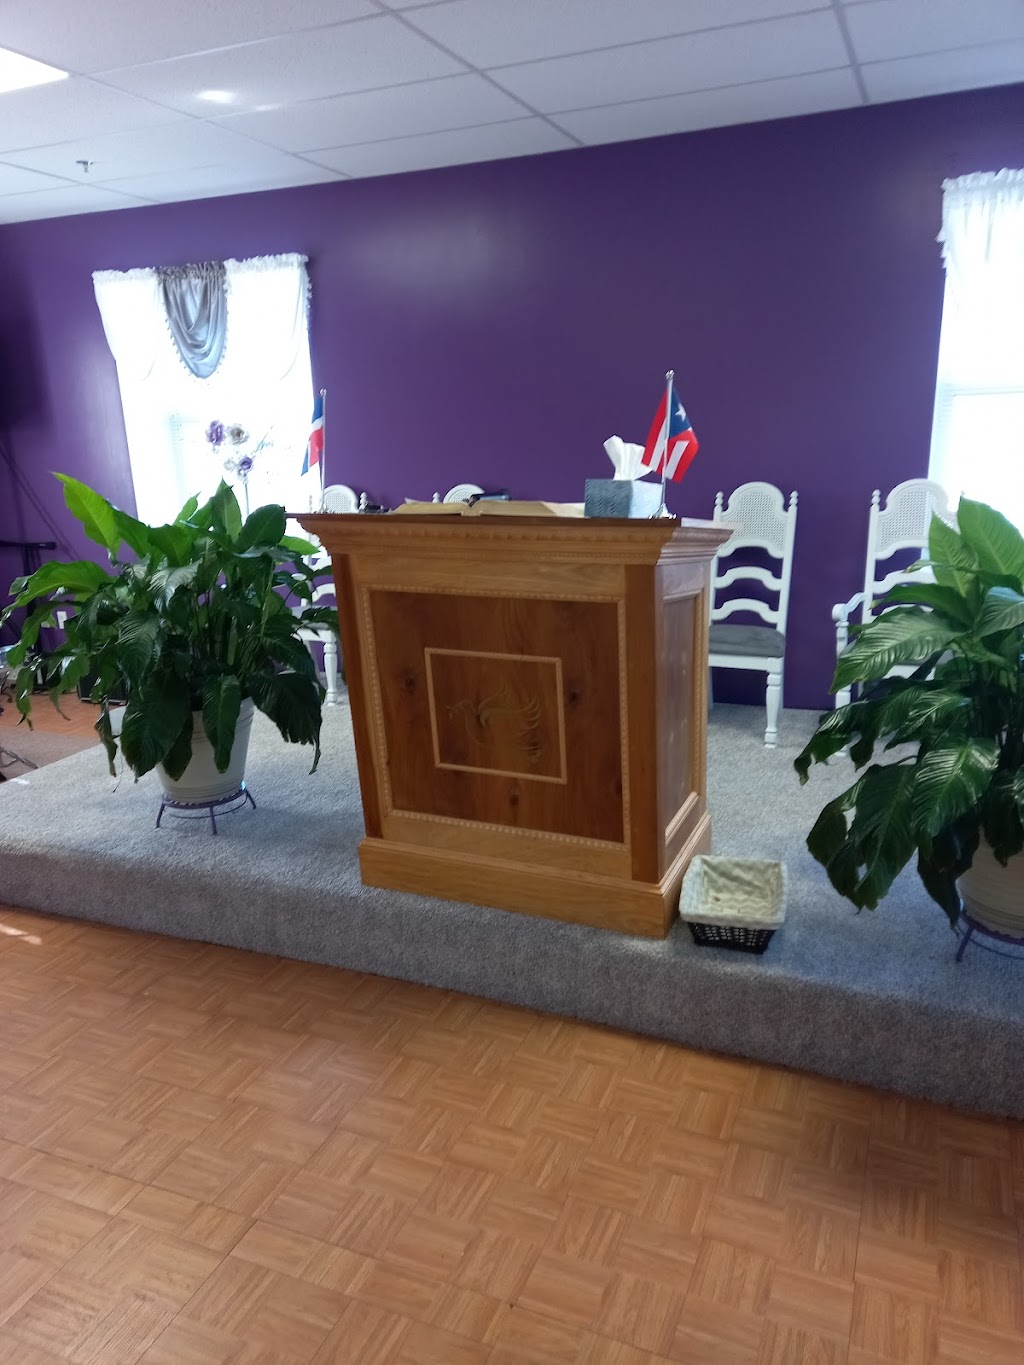 Iglesia Pentecostal Oasis en Medio del Desierto Inc. | 370 Davenport Avenue 2nd floor, New Haven, CT 06519 | Phone: (203) 419-7881